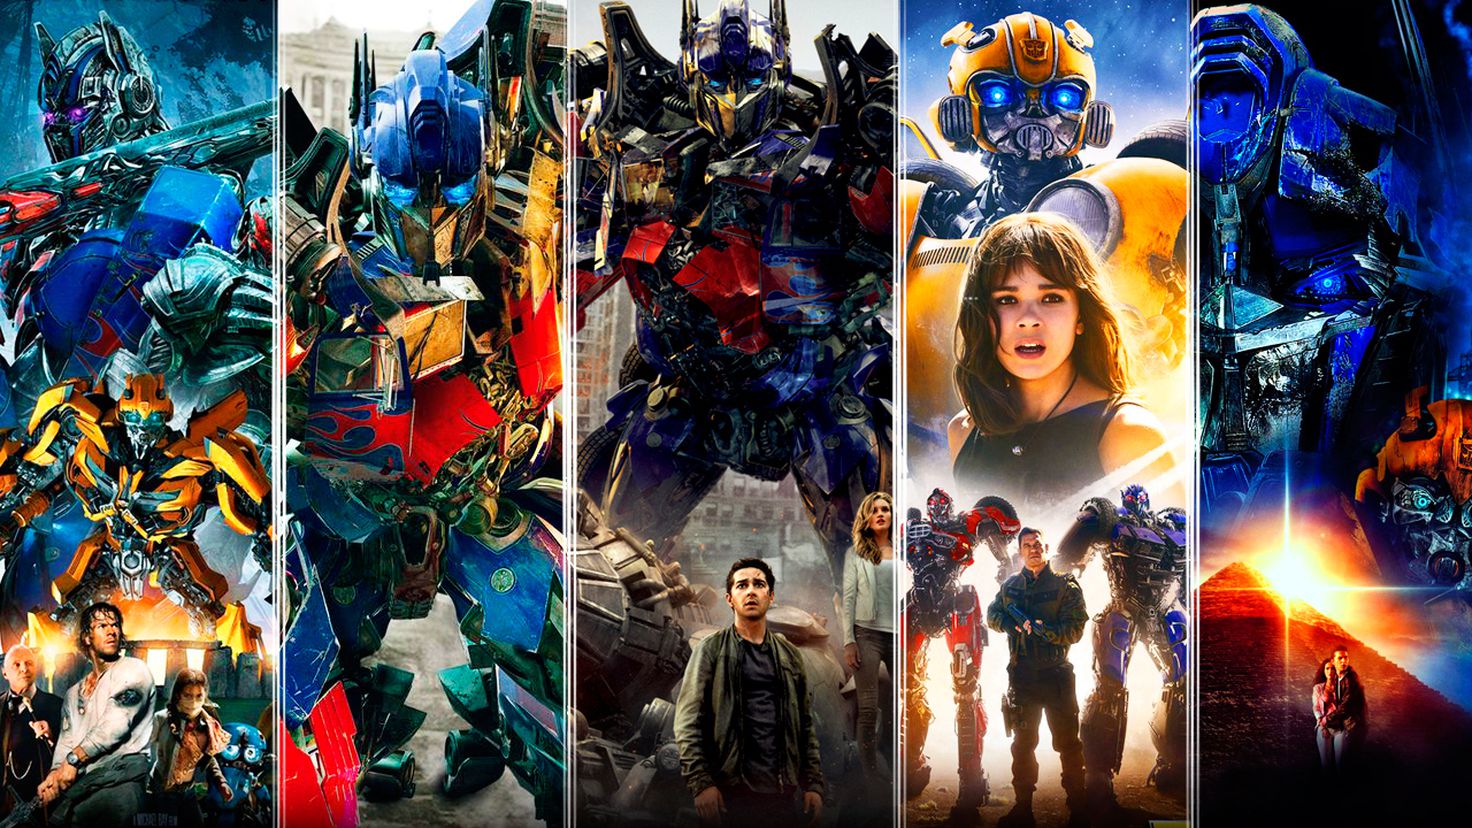 A Ordem Cronológica dos Filmes Transformers 